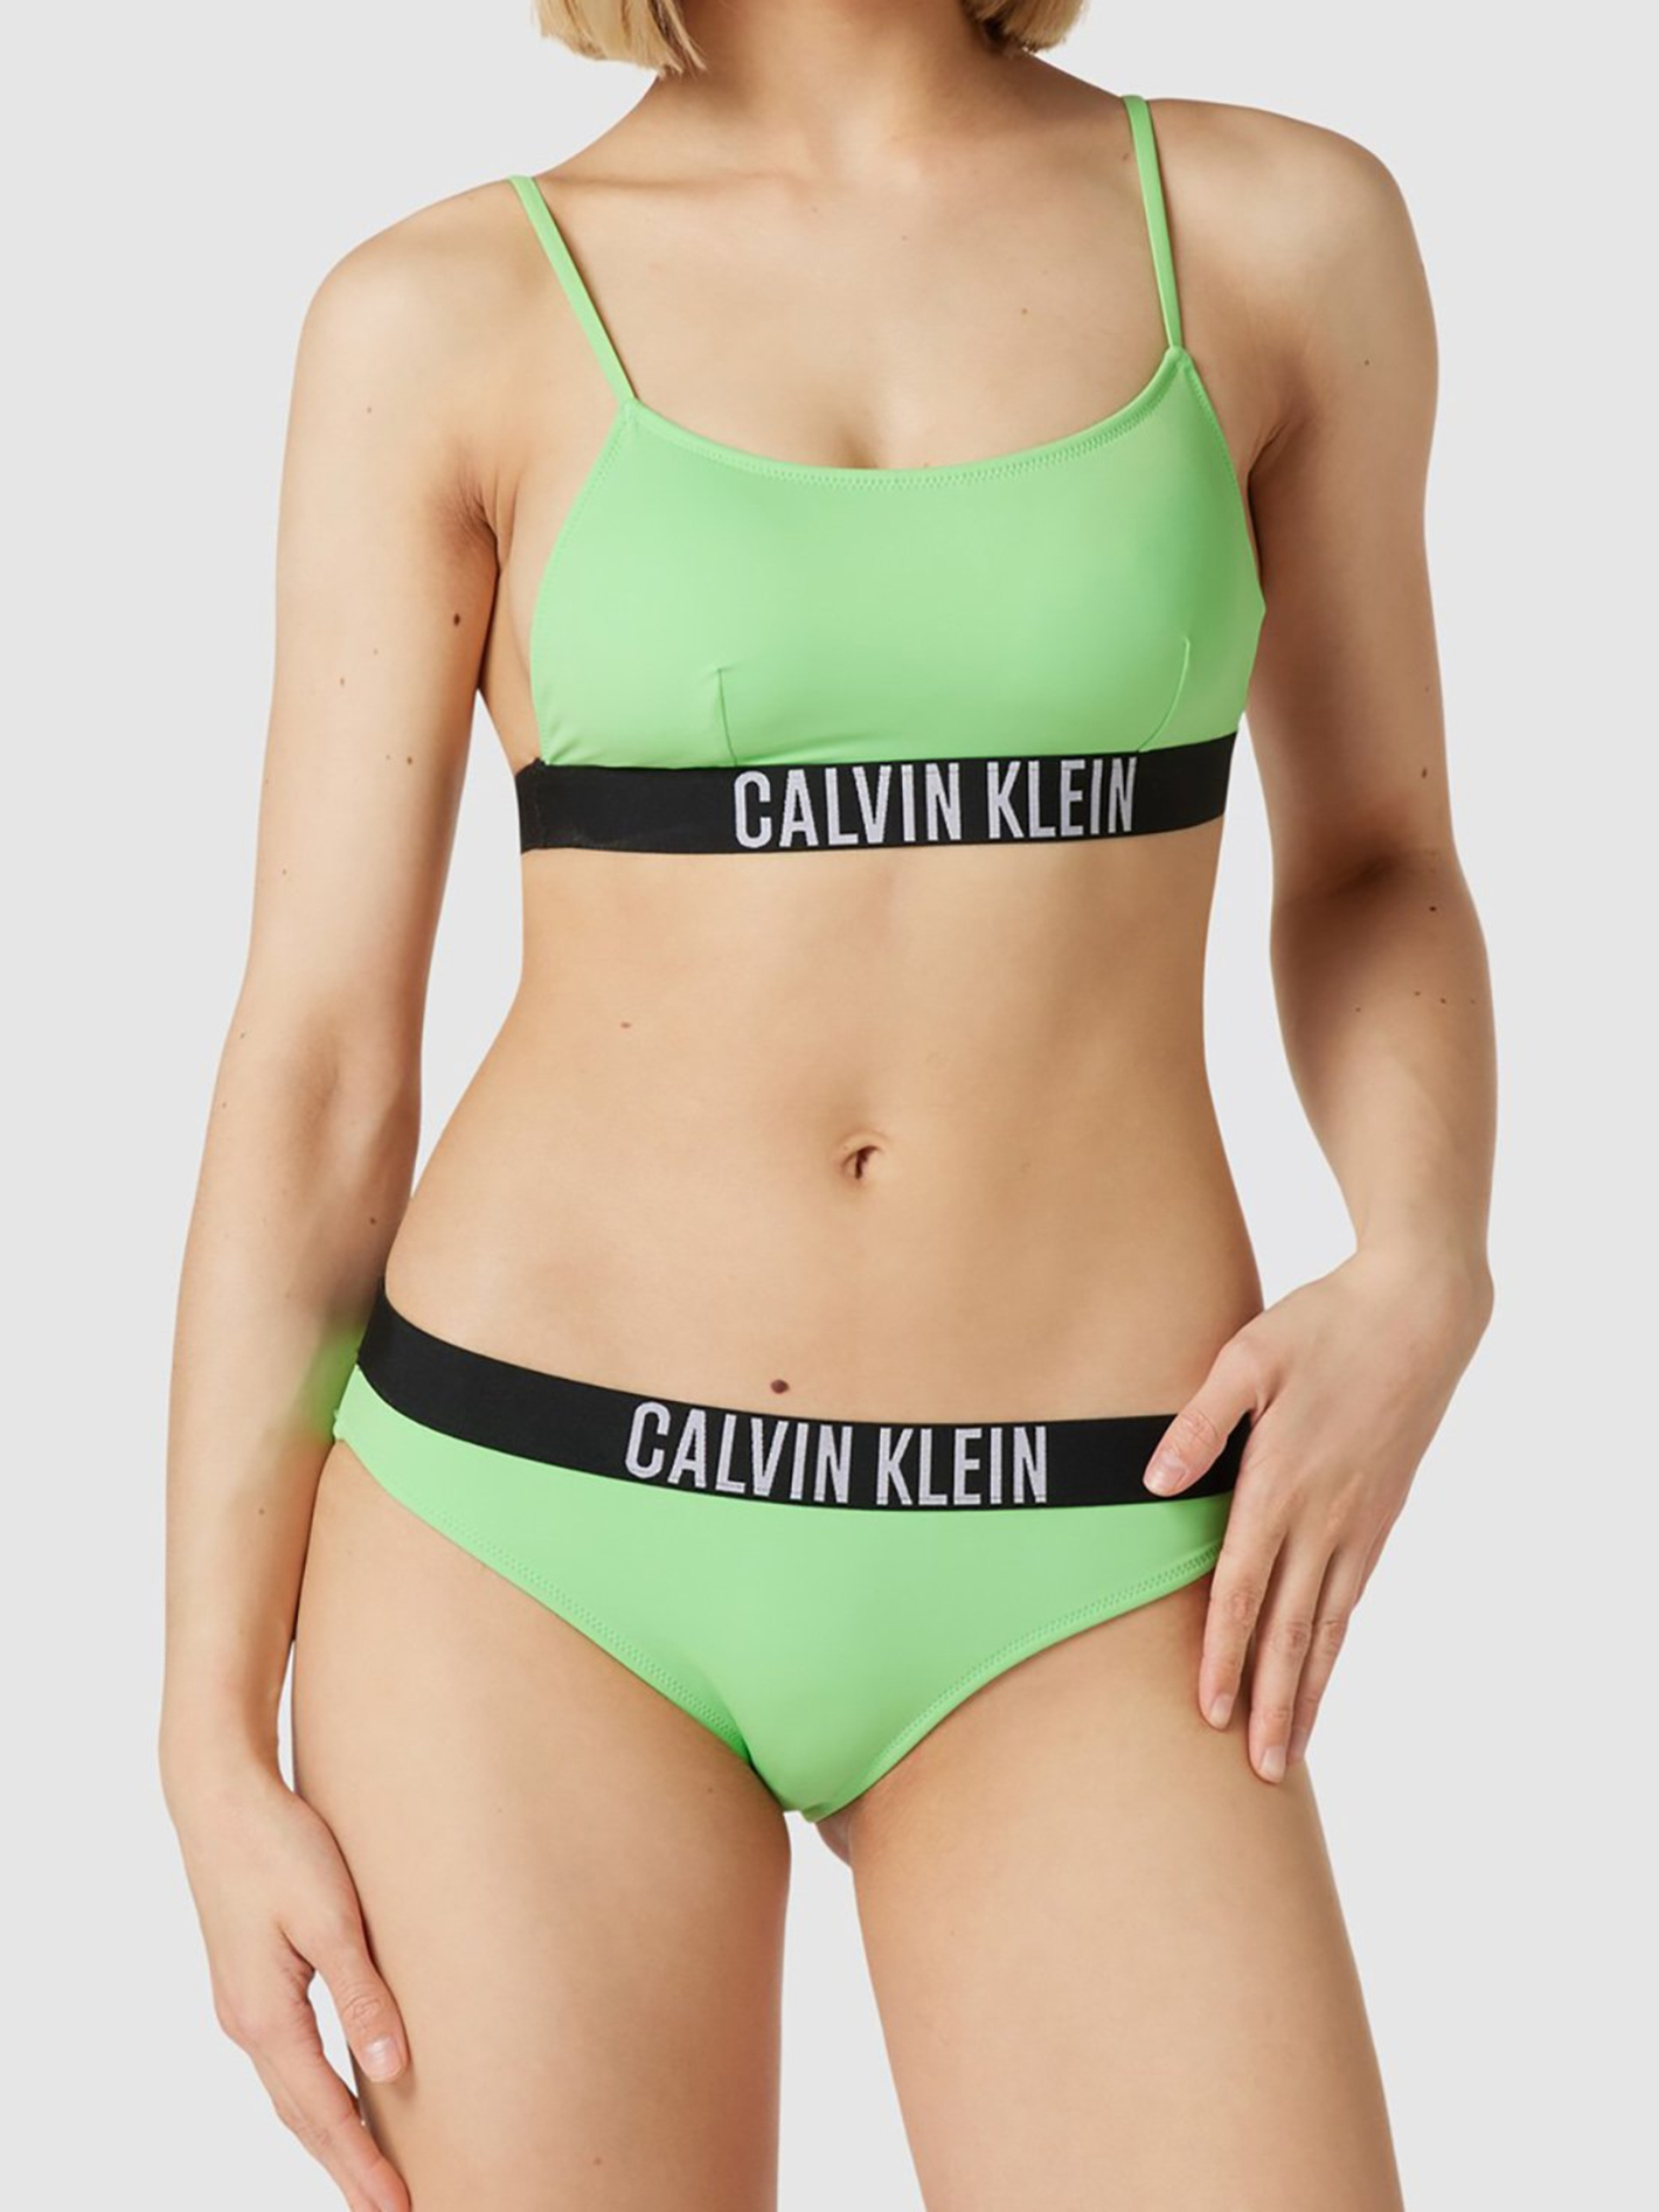 Calvin Klein dámská zelená plavková podprsenka - L (LX0)